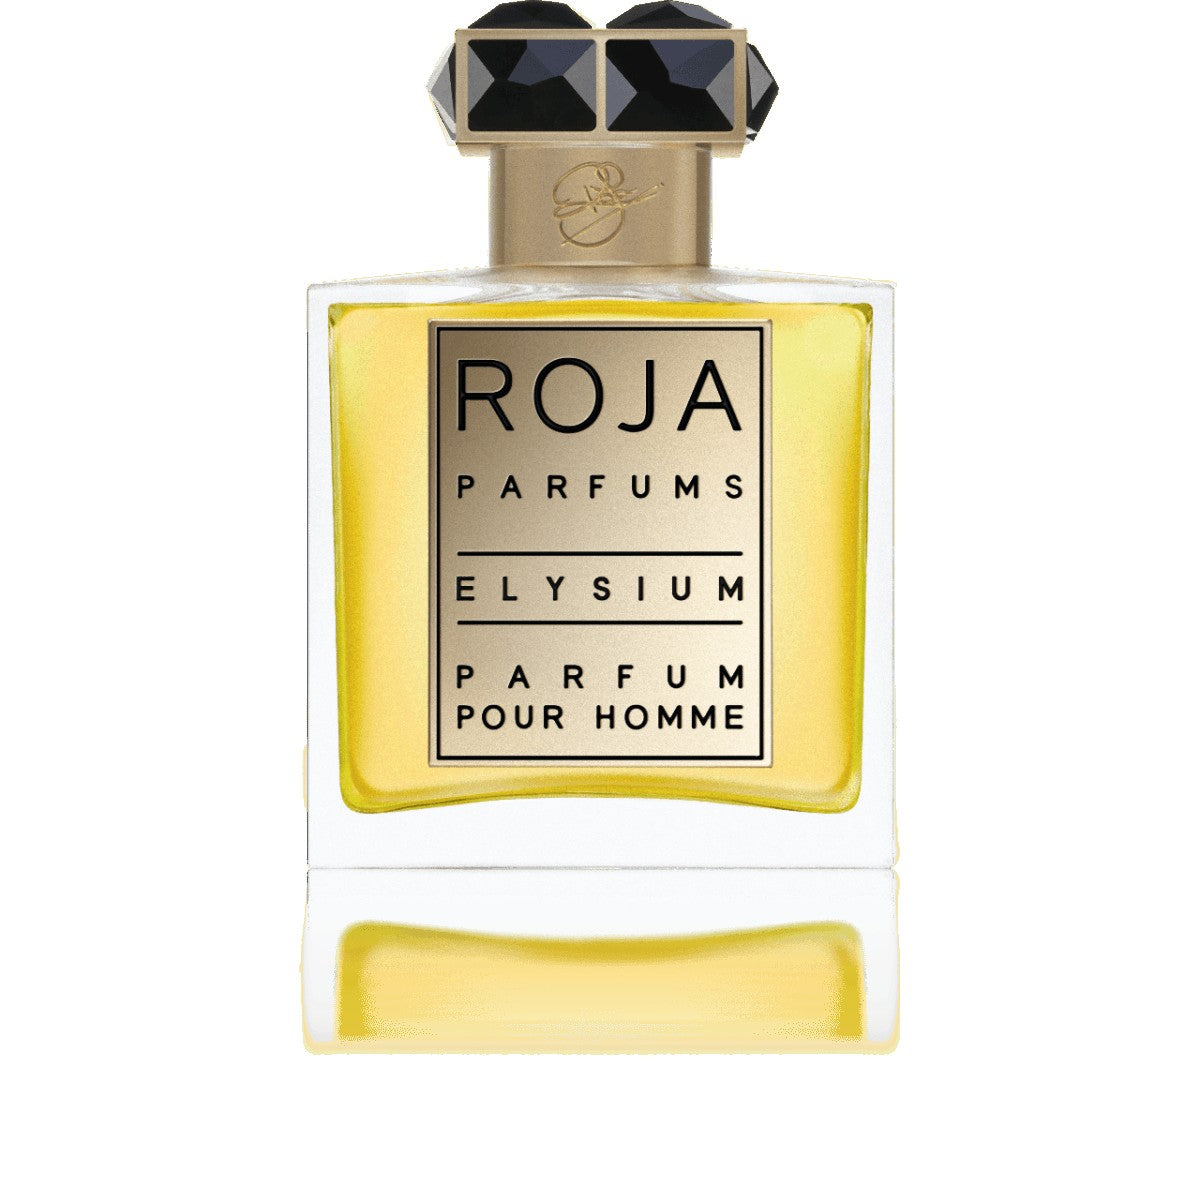 Roja Parfums Elysium Parfum - 50 ml